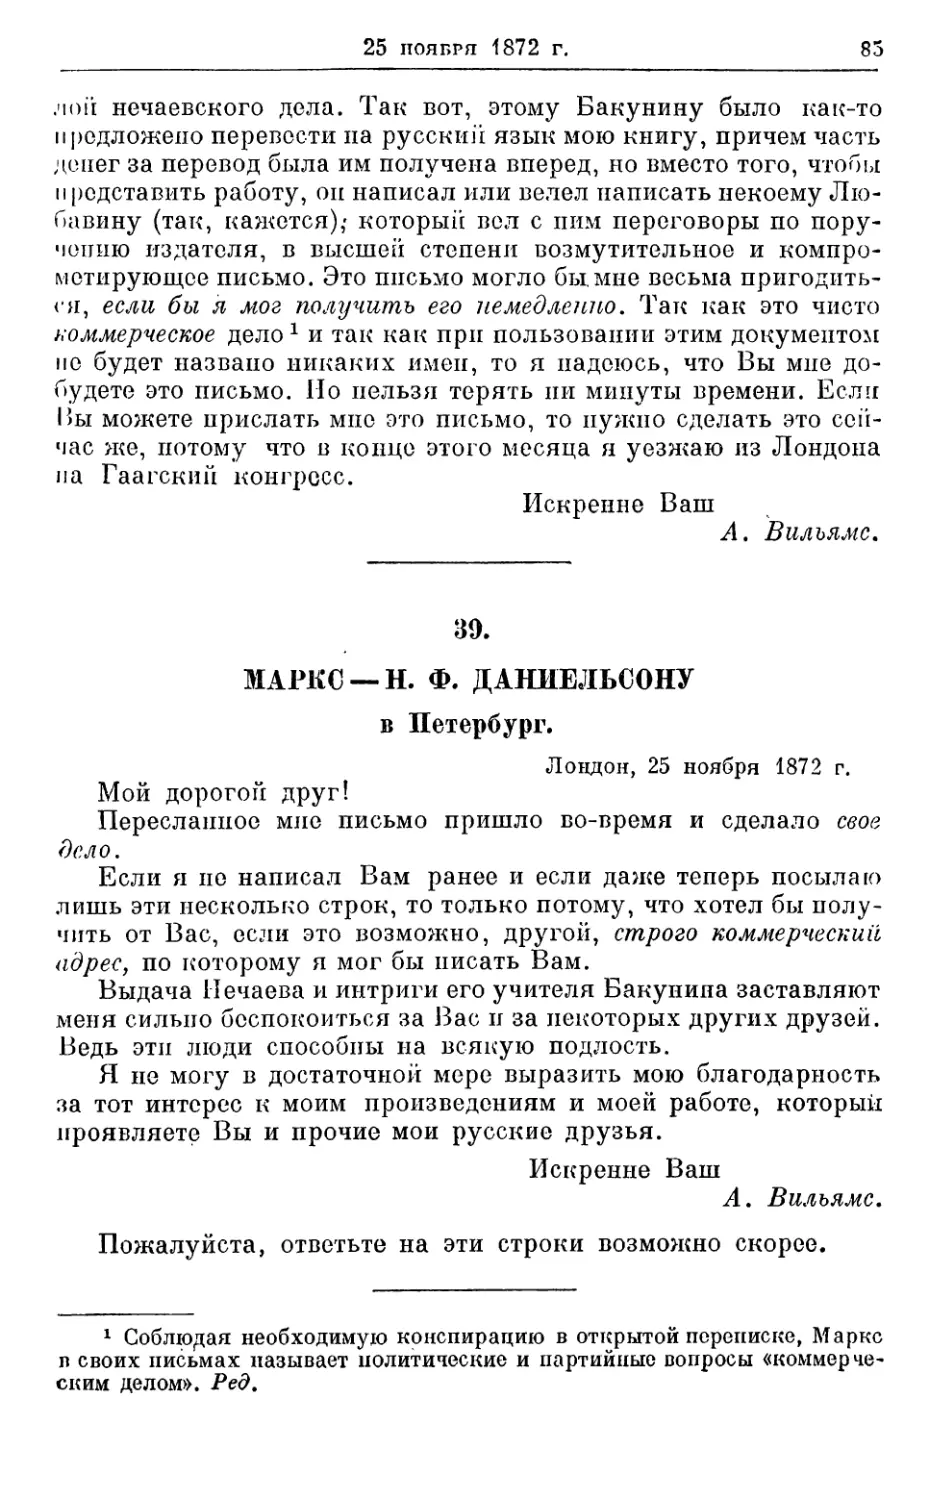 39. Маркс — Н. Ф. Даниельсоиу, 25 ноября 1872г